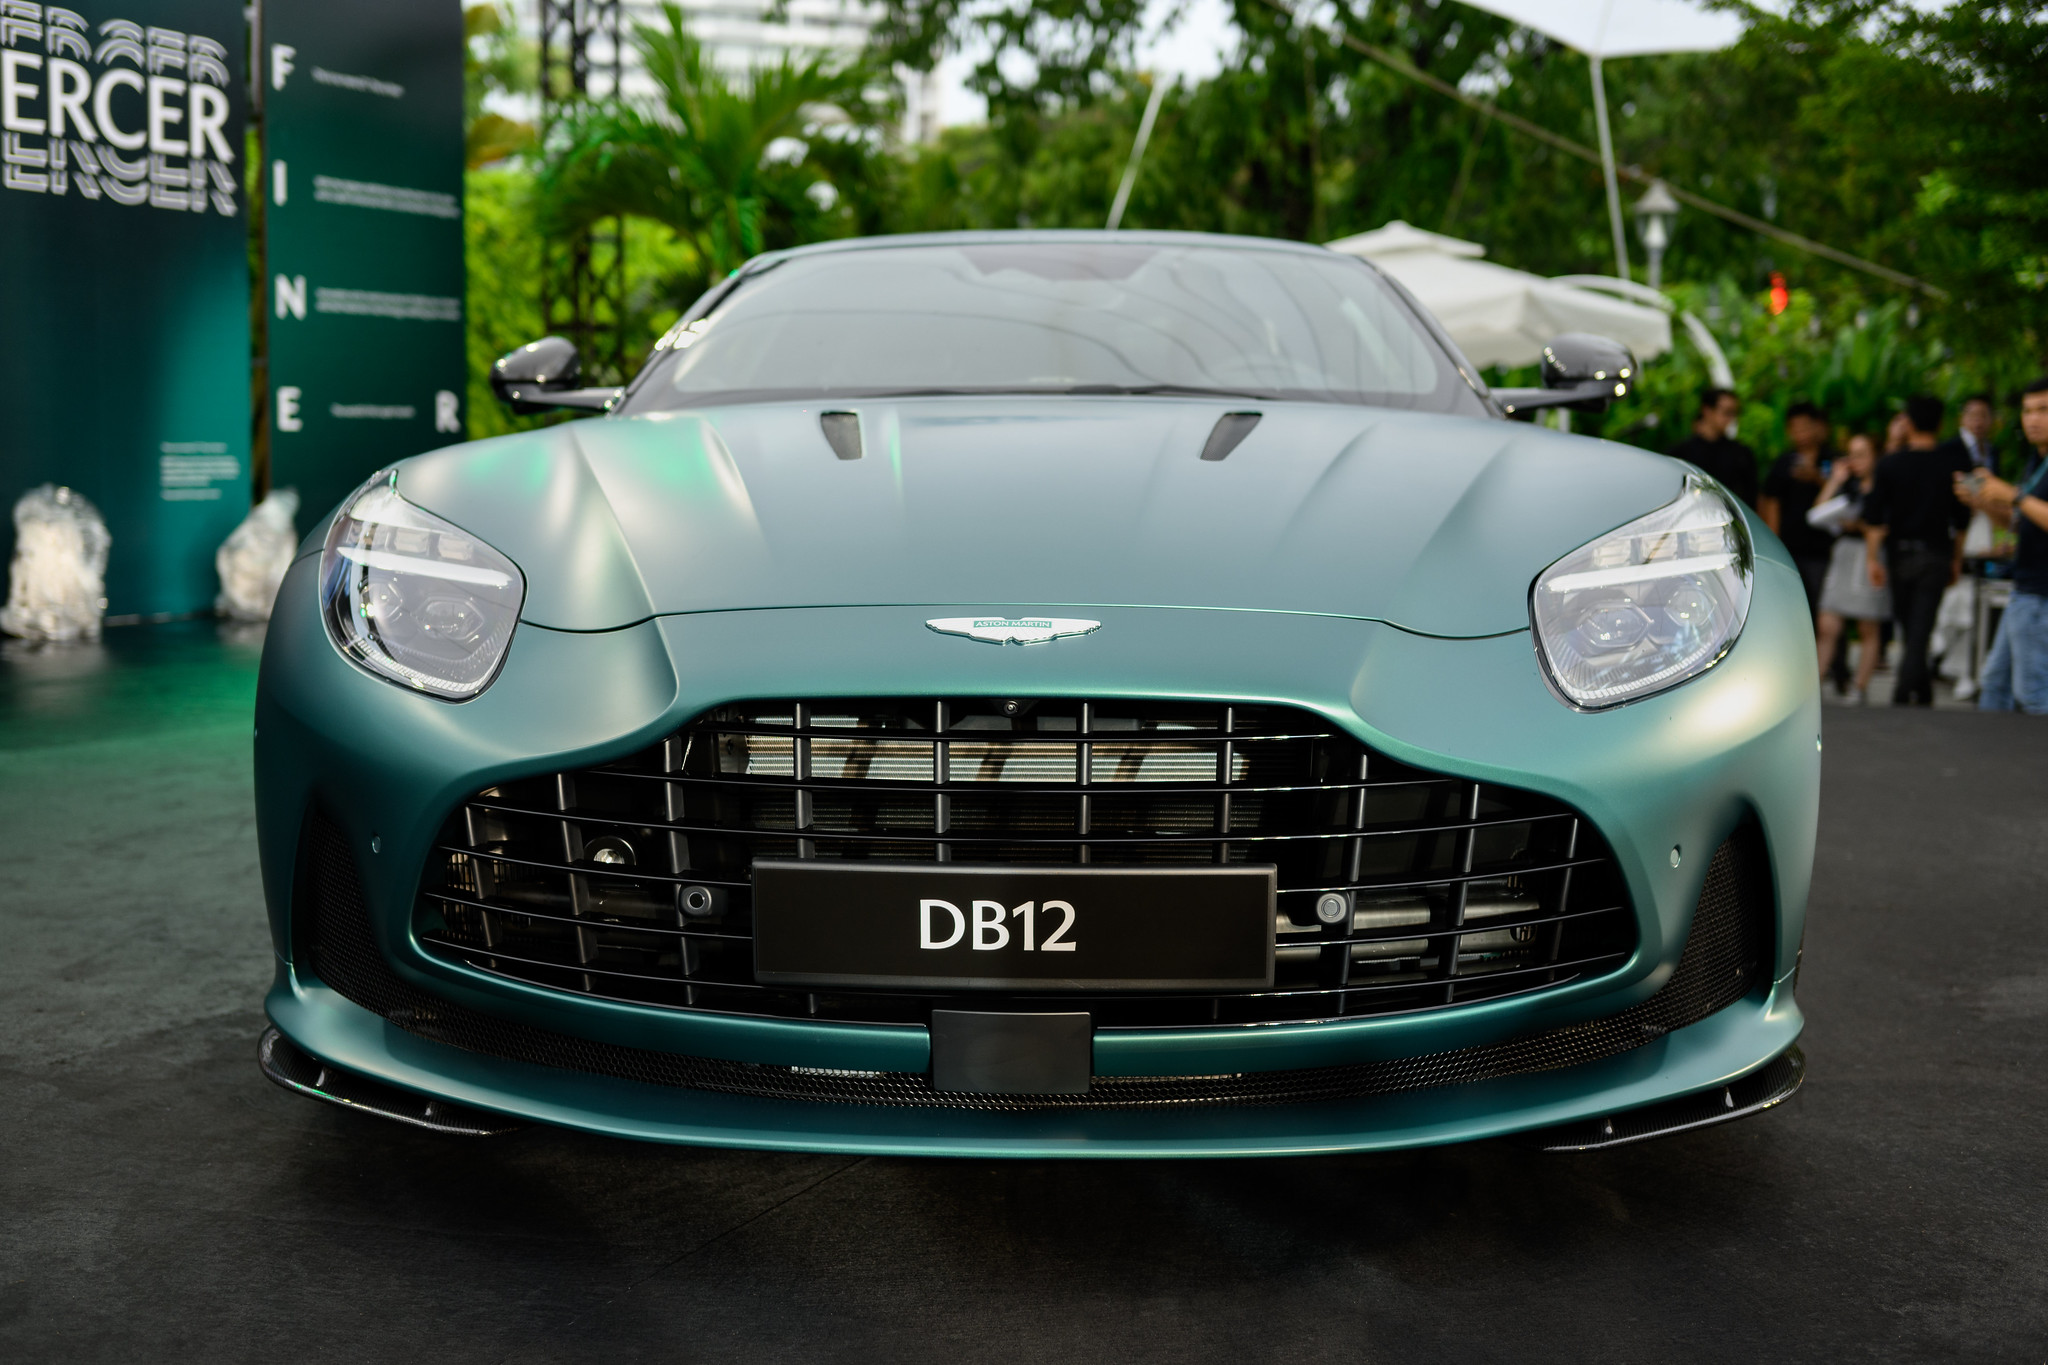 Siêu xe Aston Martin DB12 về Việt Nam, giá từ 19,5 tỉ đồng- Ảnh 4.